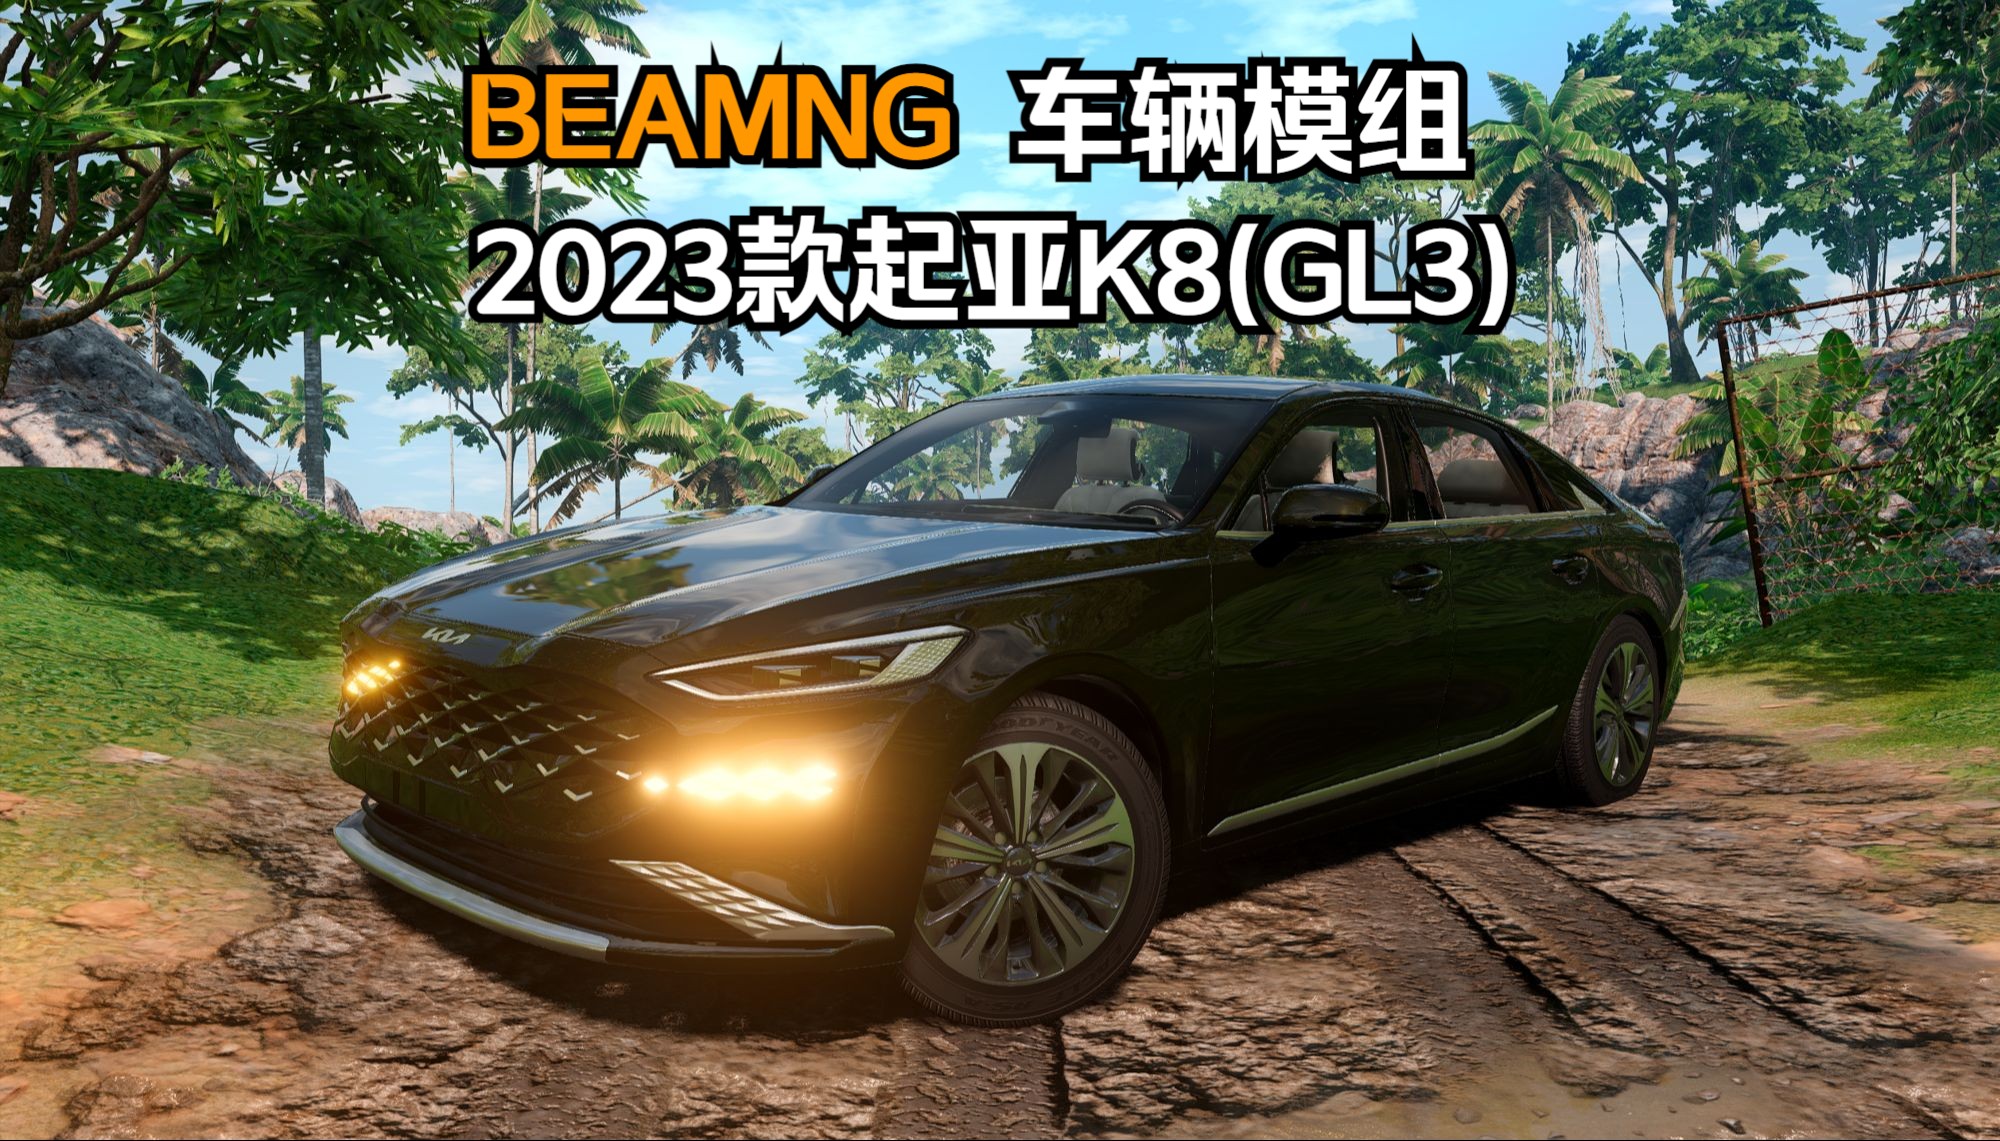 BEAMNG车辆模组-2023款起亚K8(GL3) 作者:vDiE87